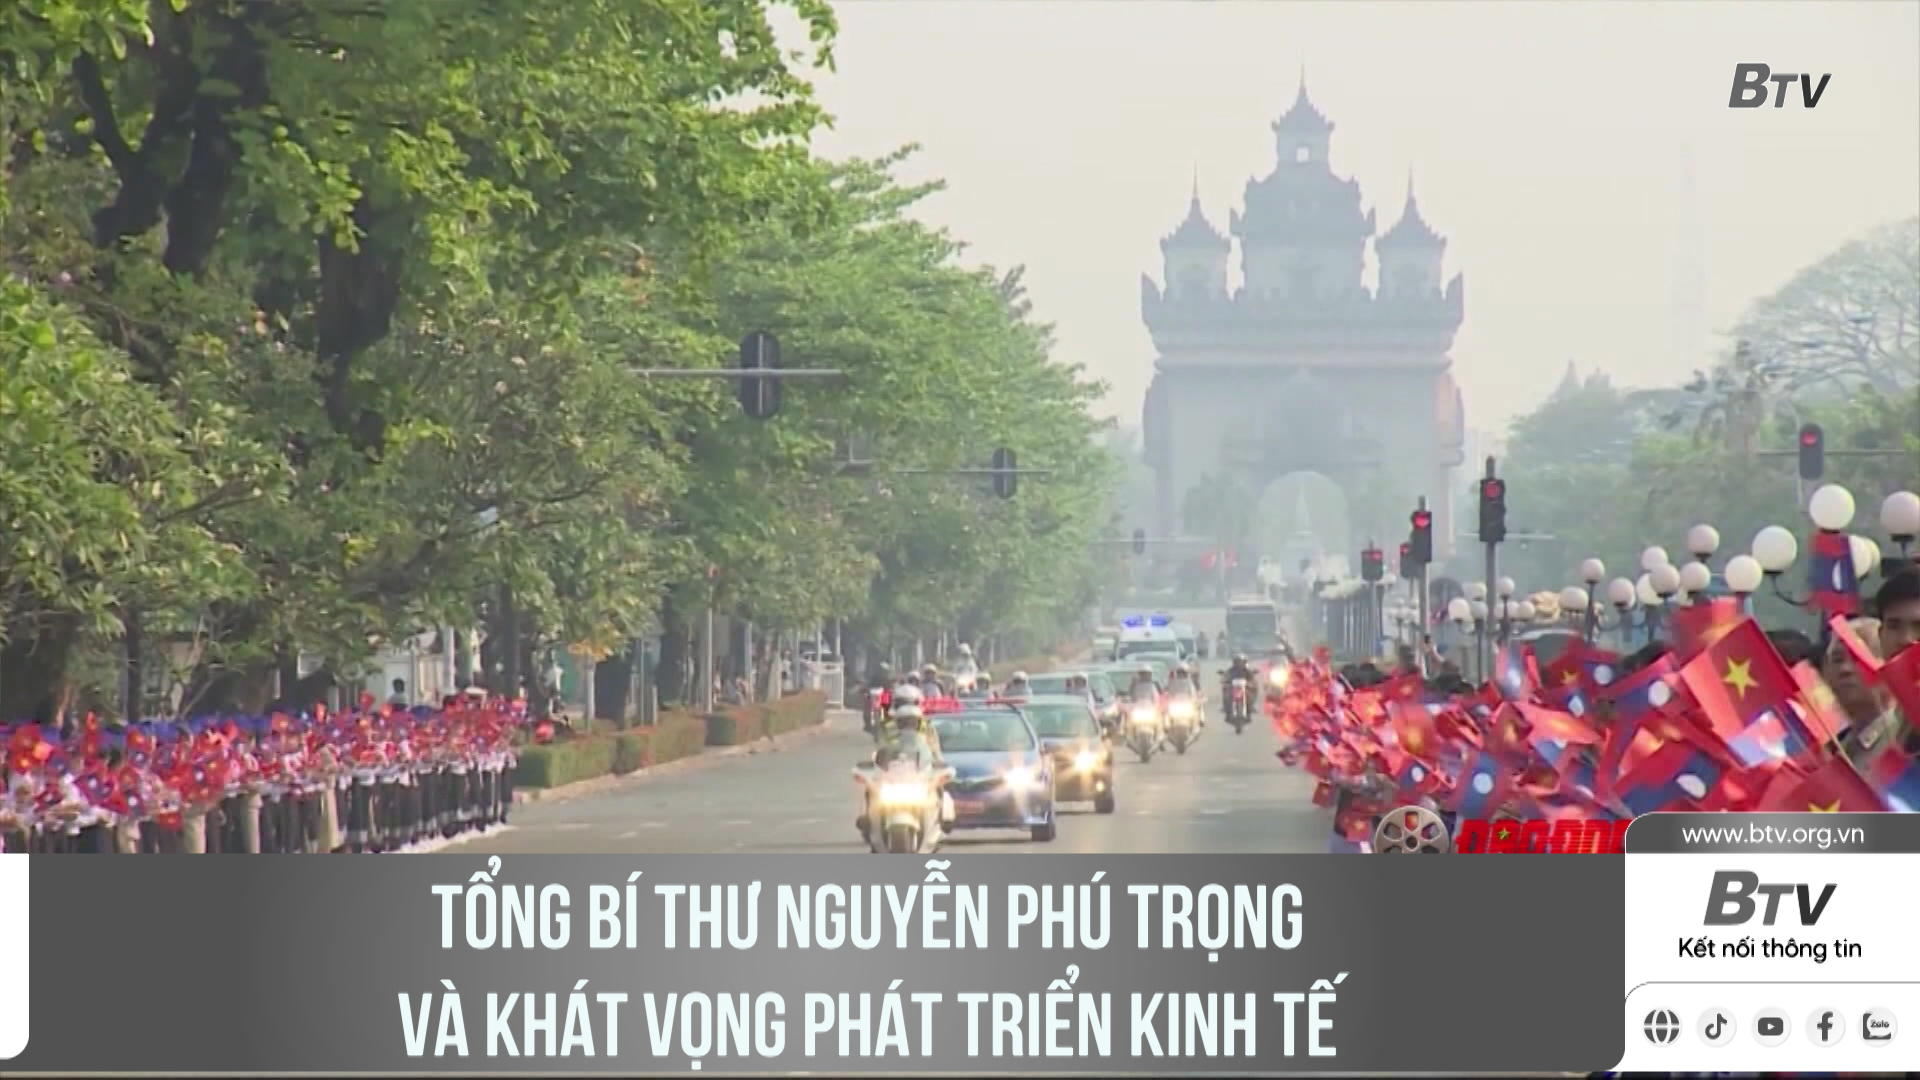 Tổng Bí thư Nguyễn Phú Trọng và khát vọng phát triển kinh tế